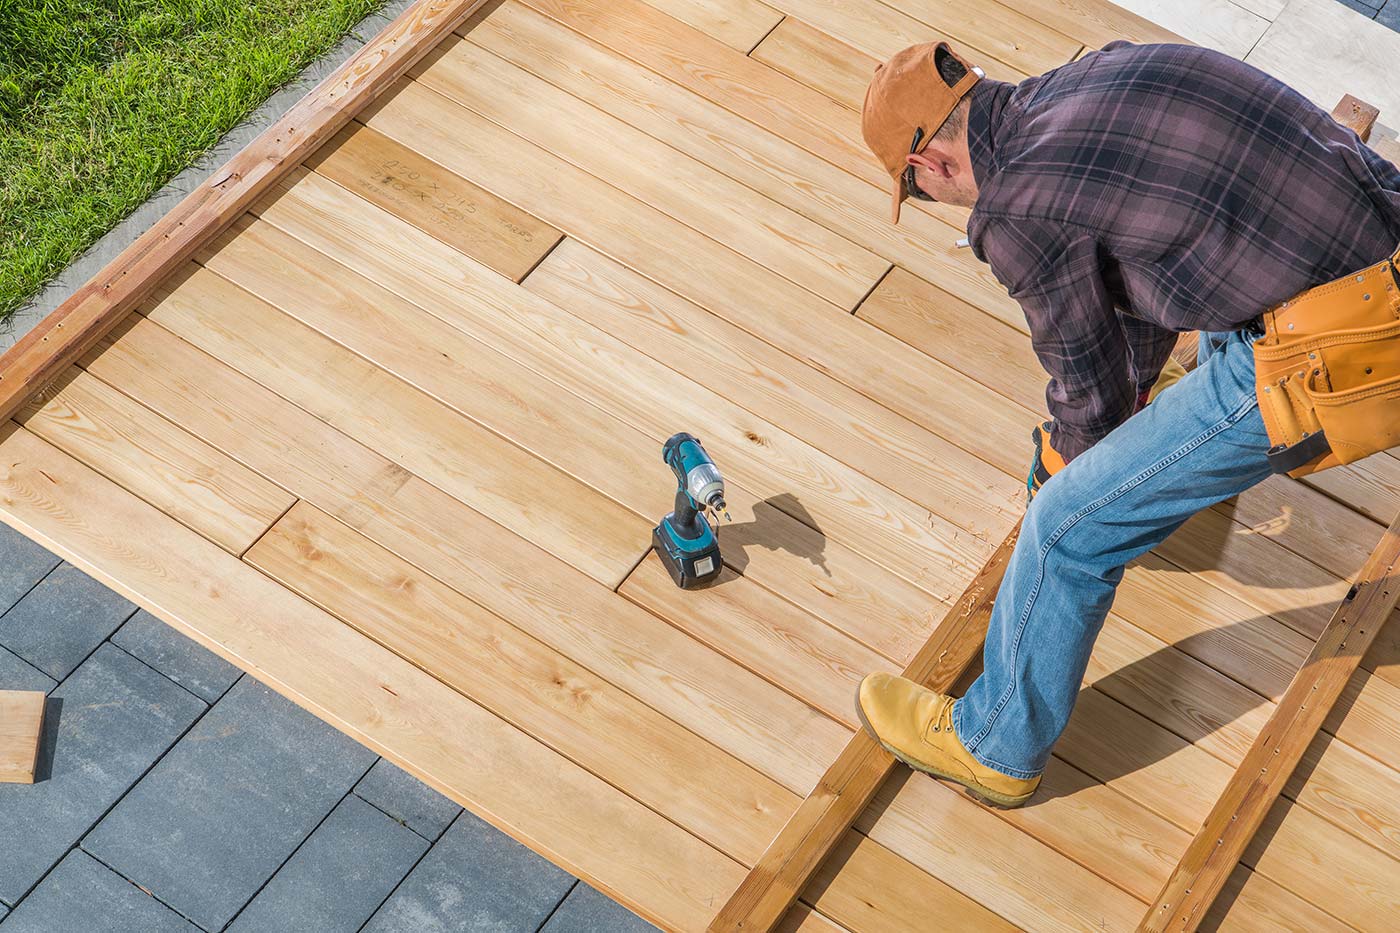 men-building-wooden-deck-on-his-backyard-2021-08-28-22-28-46-utc